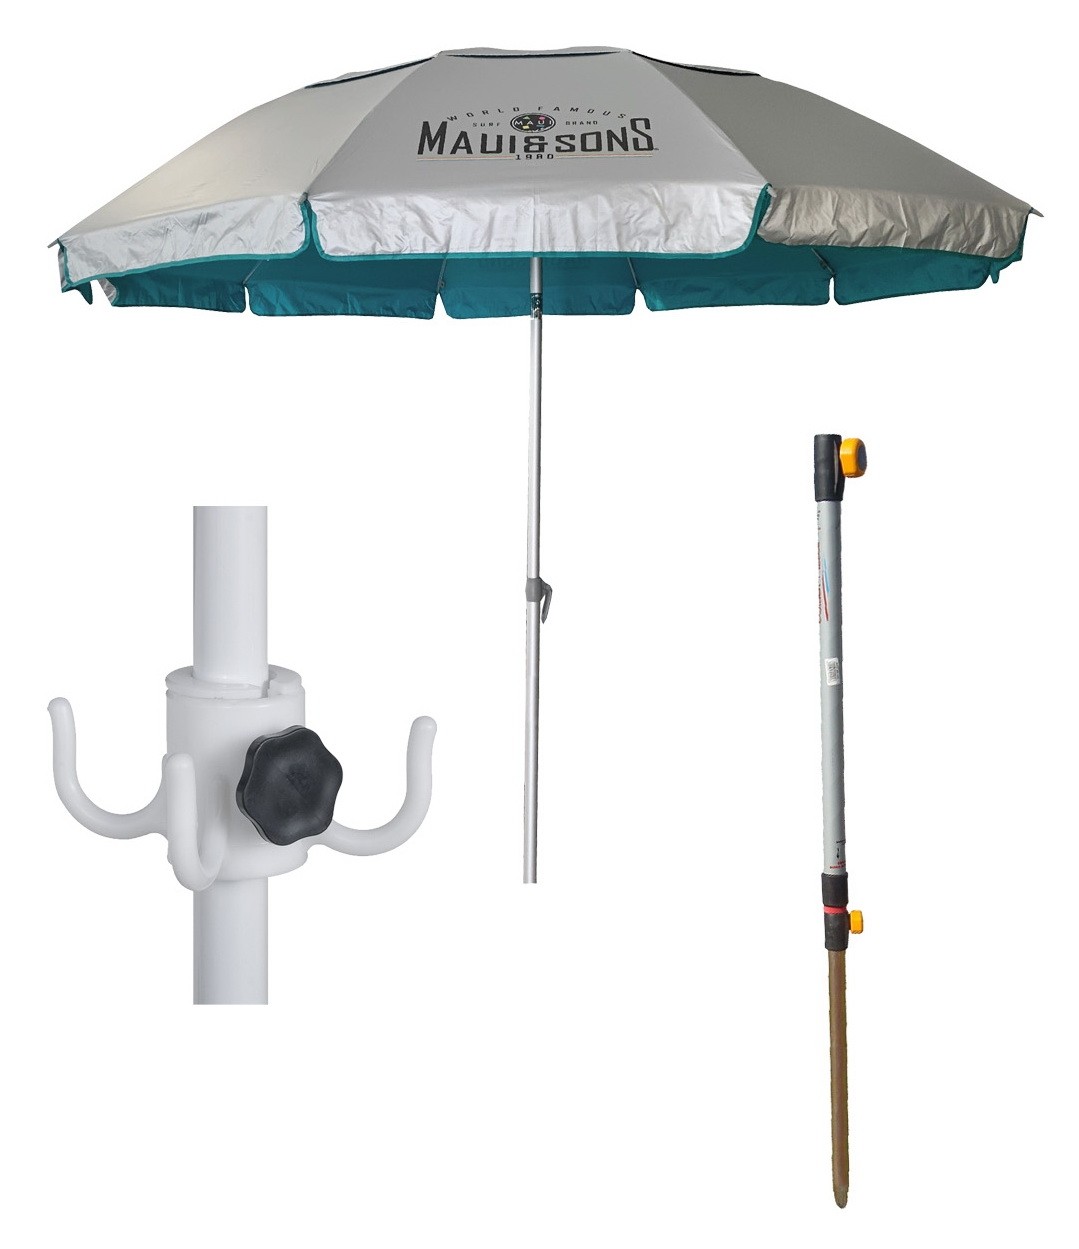 Πλήρες πακέτο ομπρέλα Maui and Sons - Ø2,2m μαζί με κρουστικό κοντάρι και κρεμάστρα